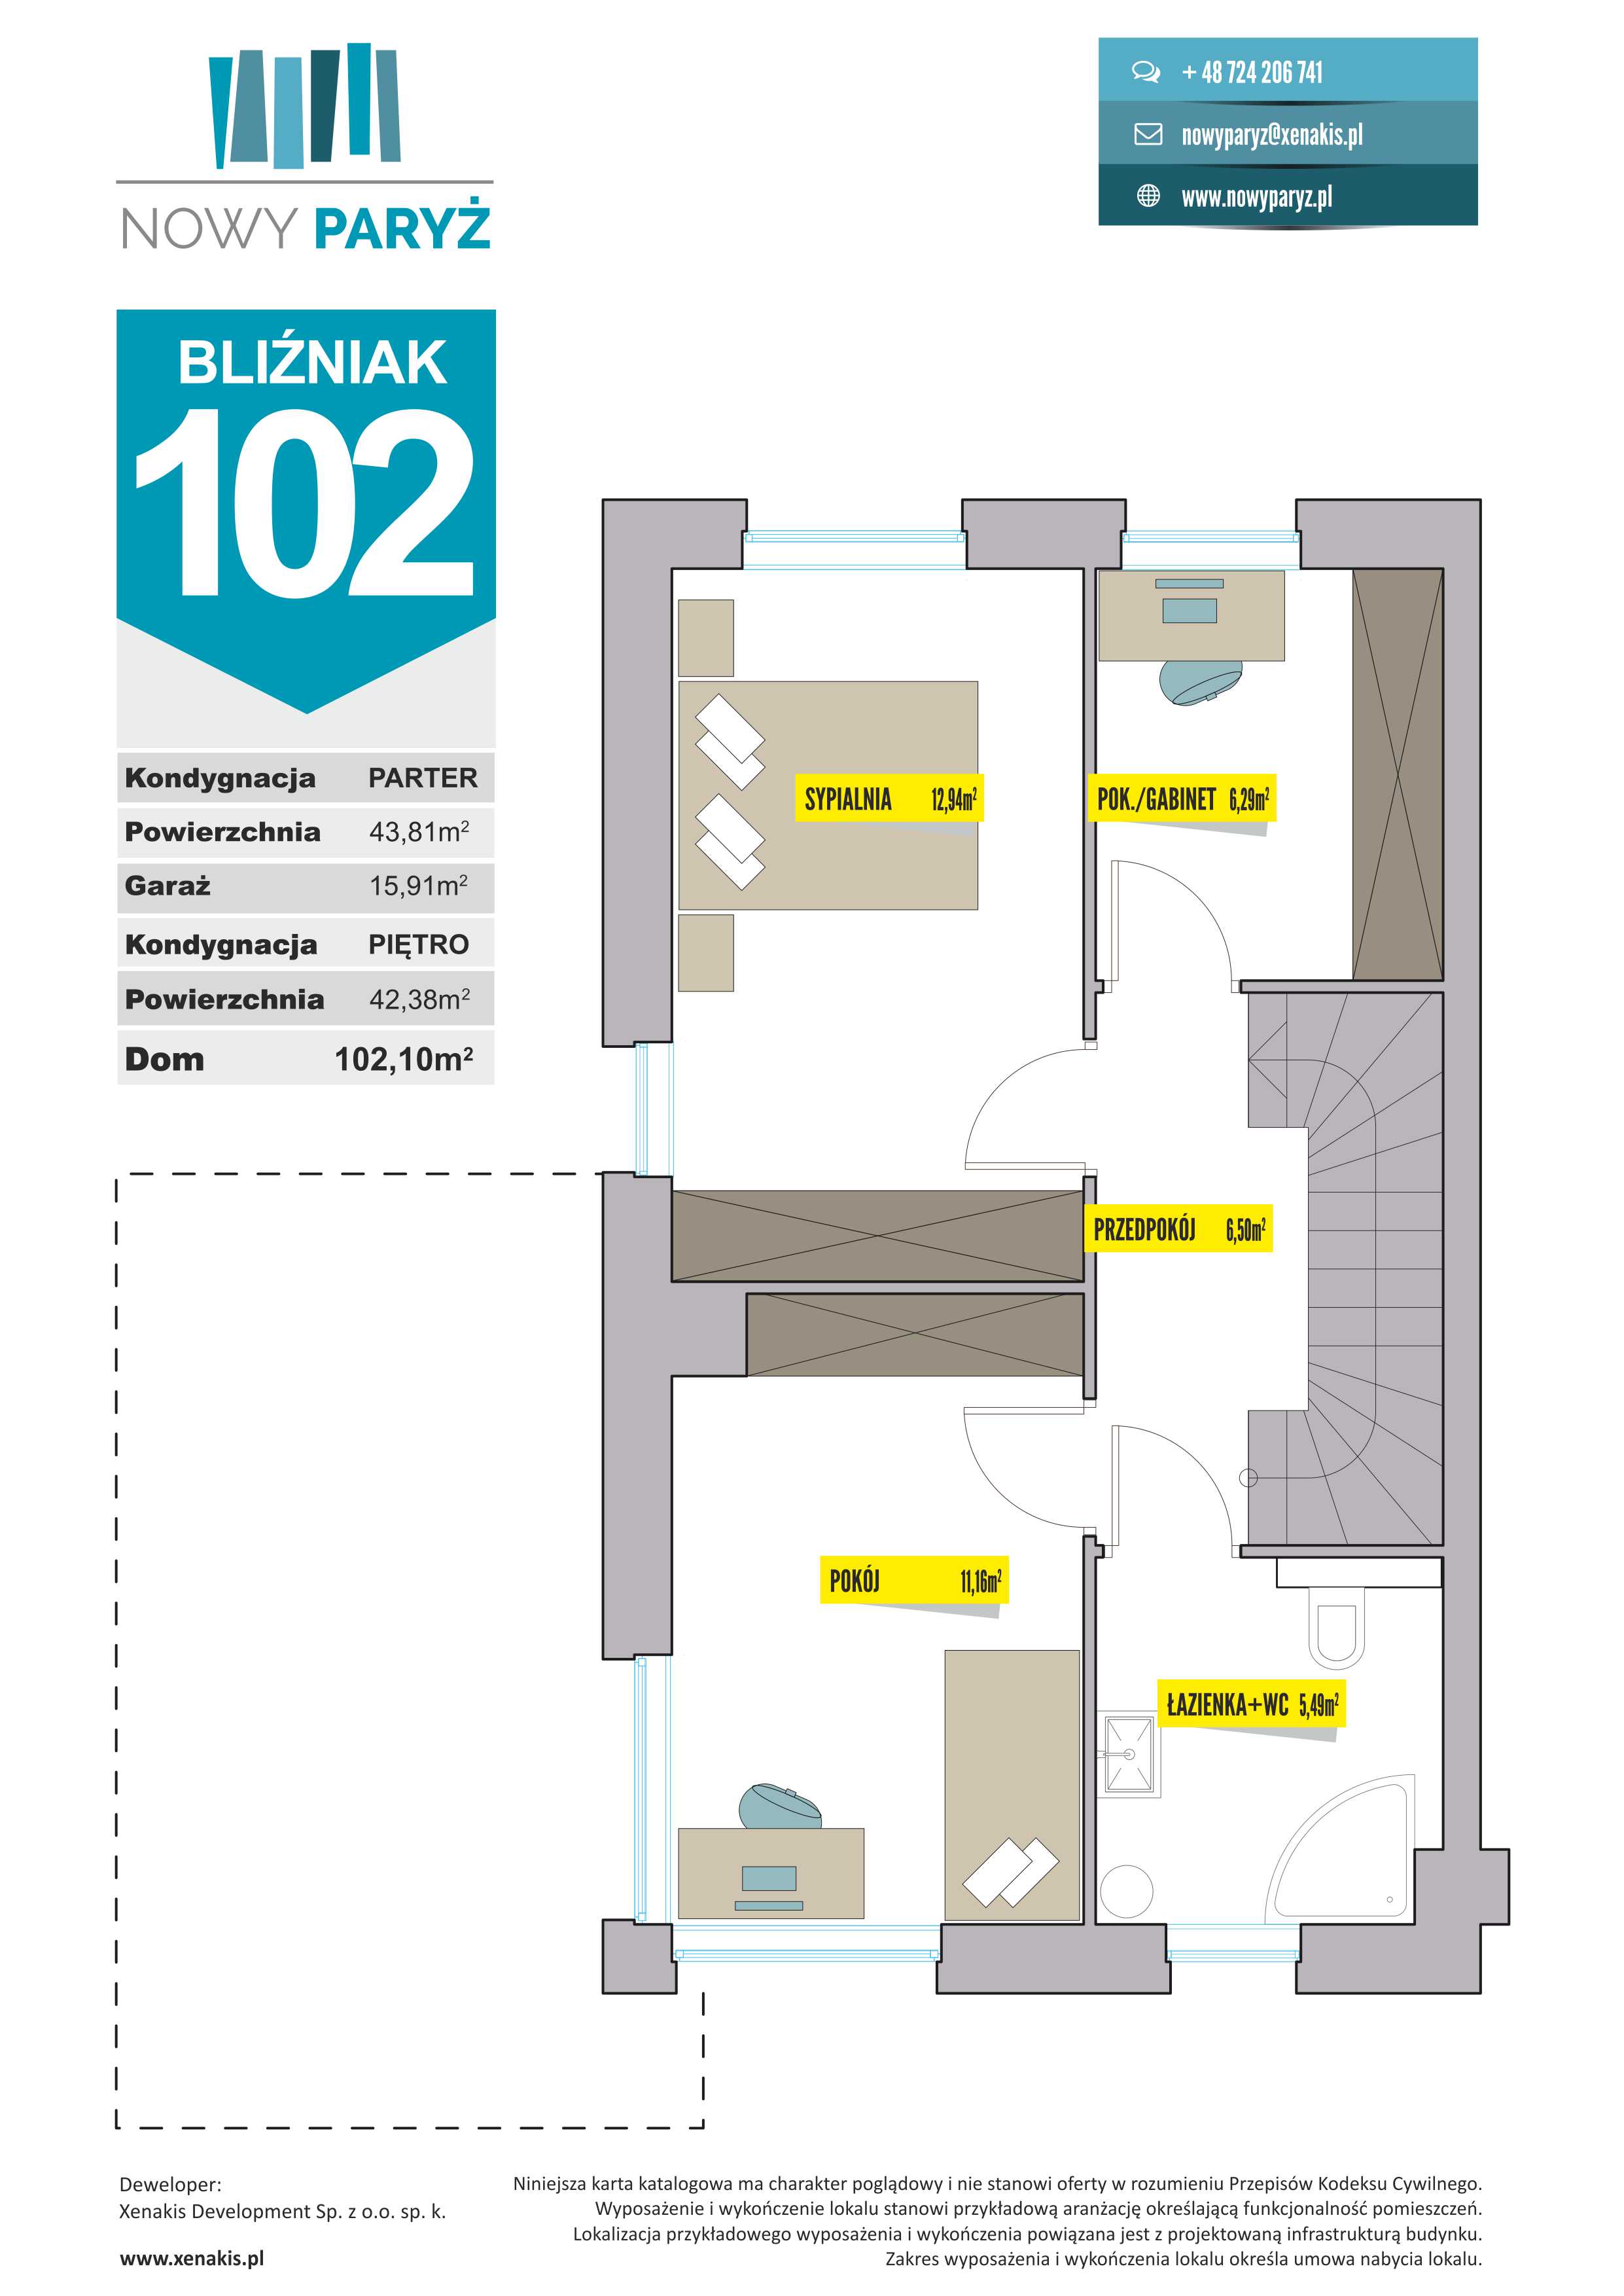 Bliźniak 102 m2 - Piętro I